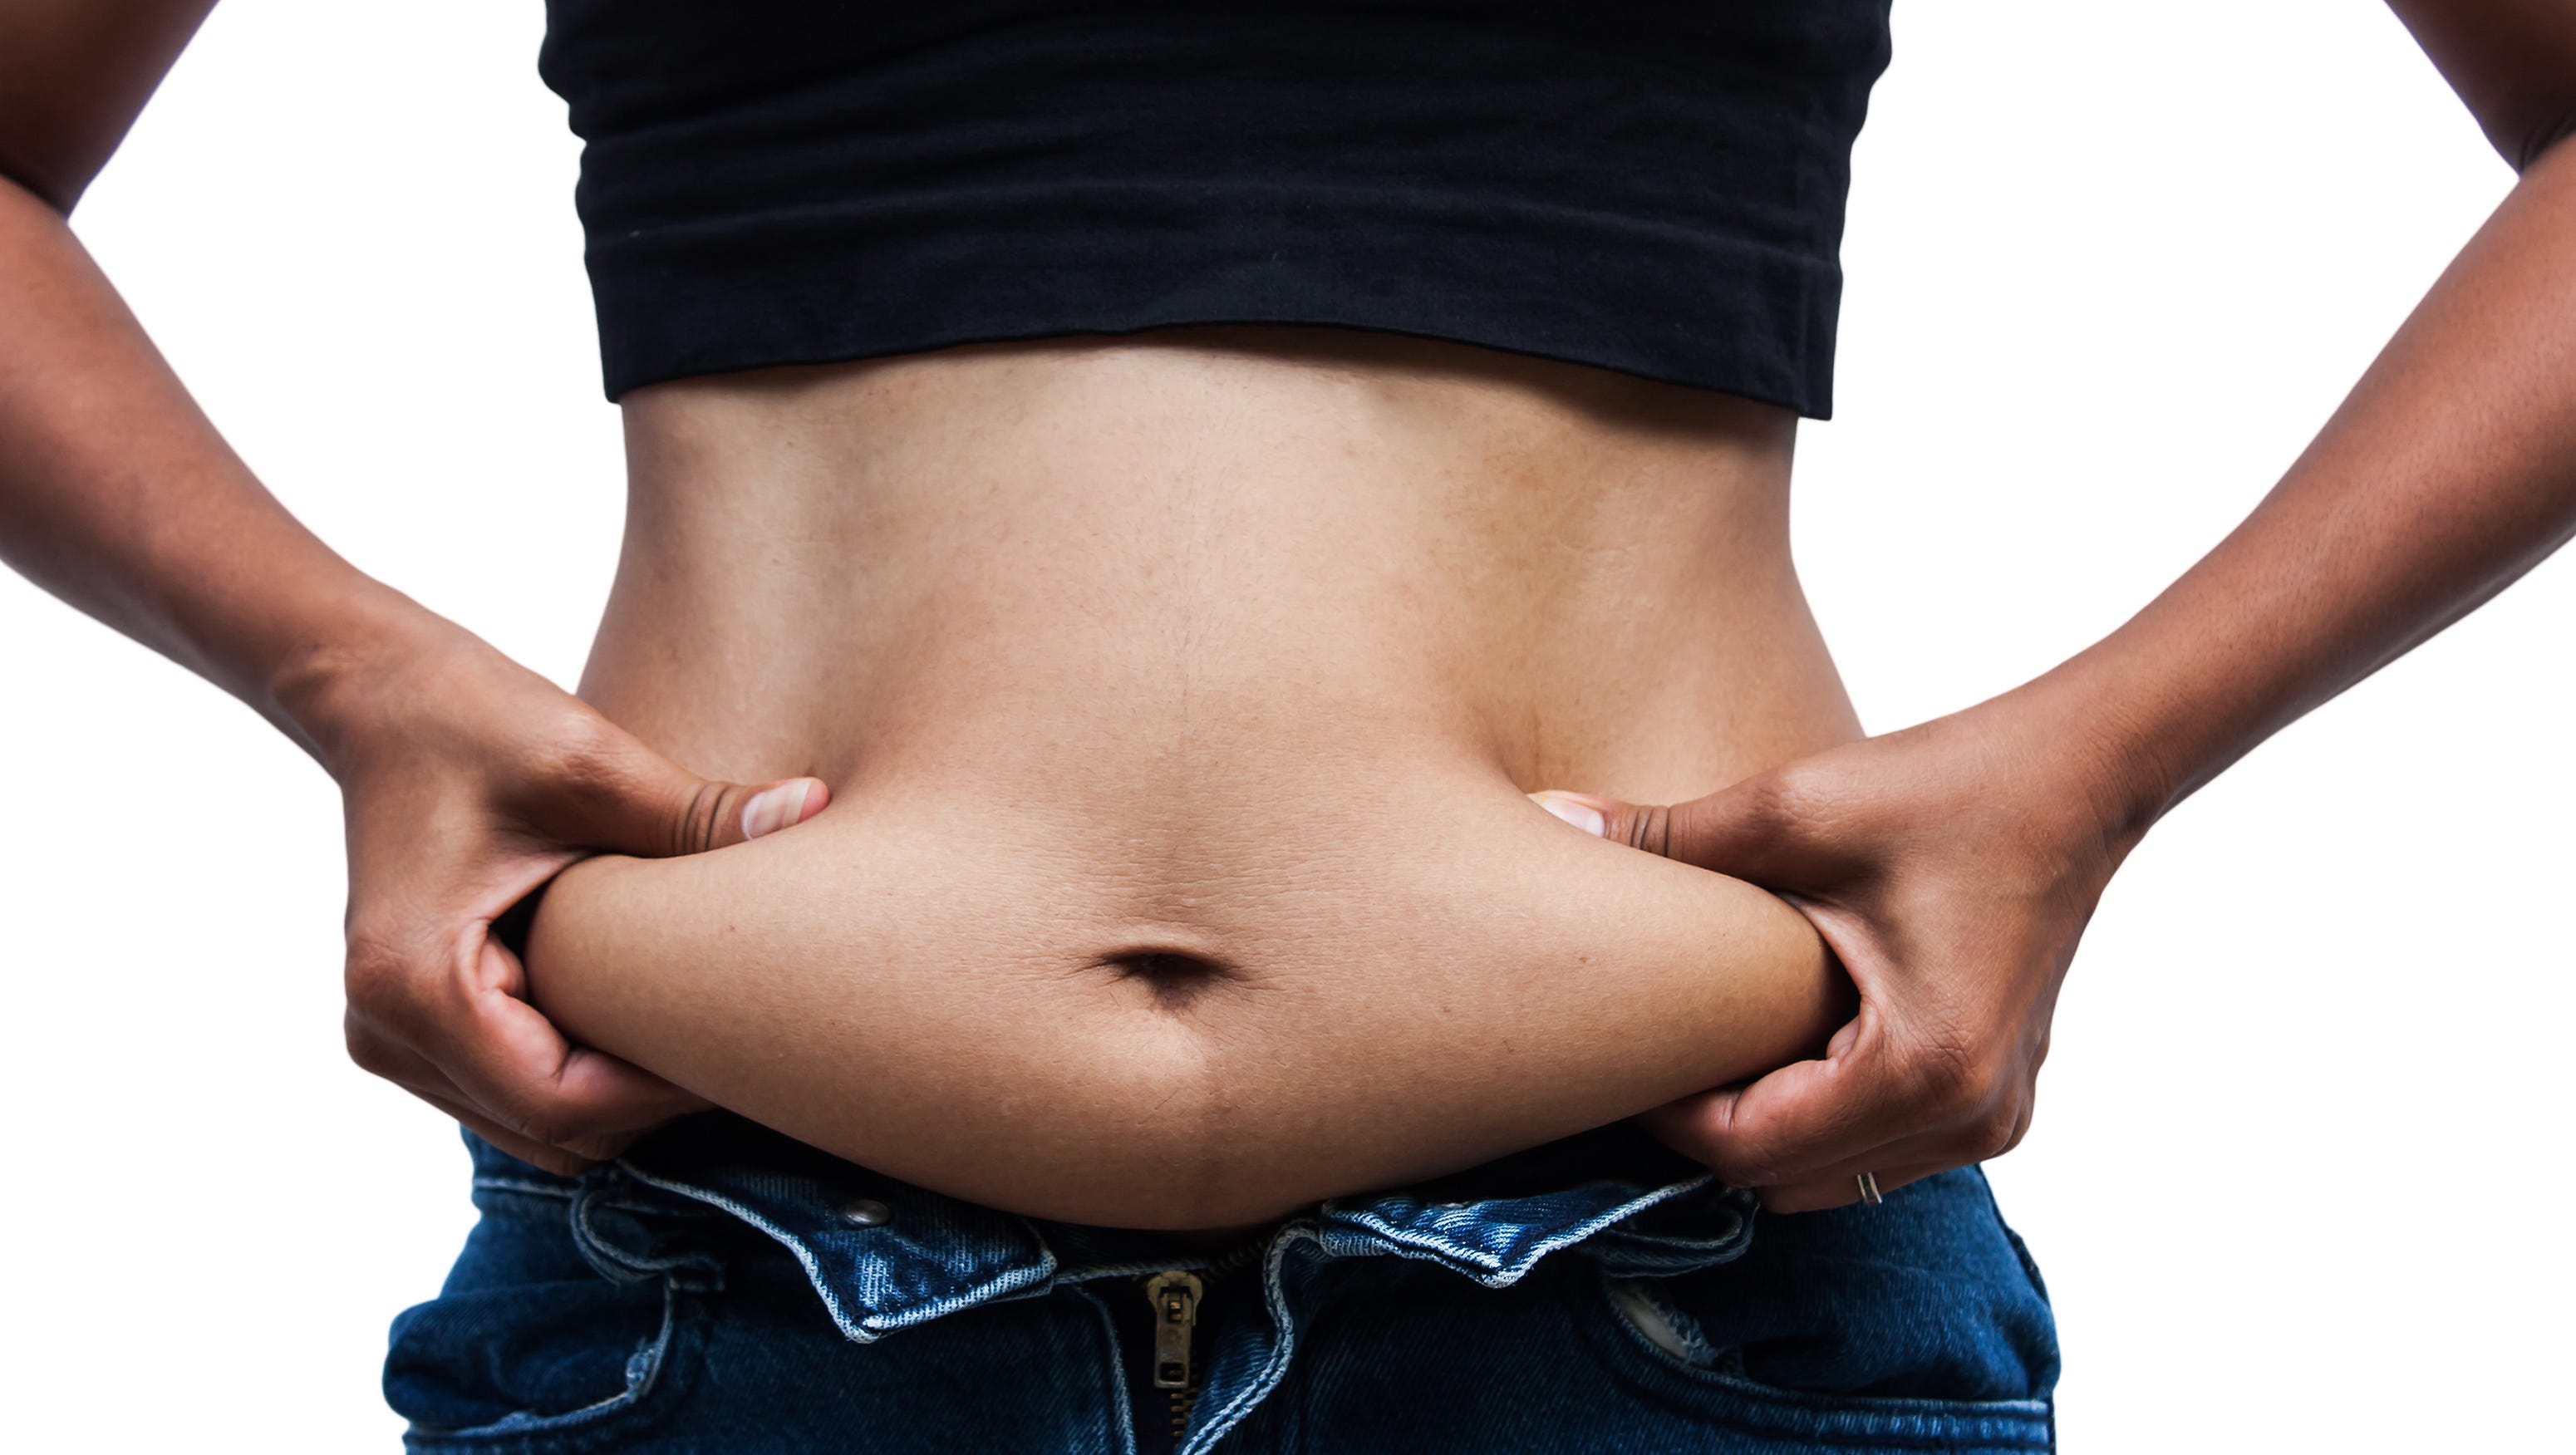 新研究揭示新药将“蓄能”脂肪转变为“耗能”脂肪